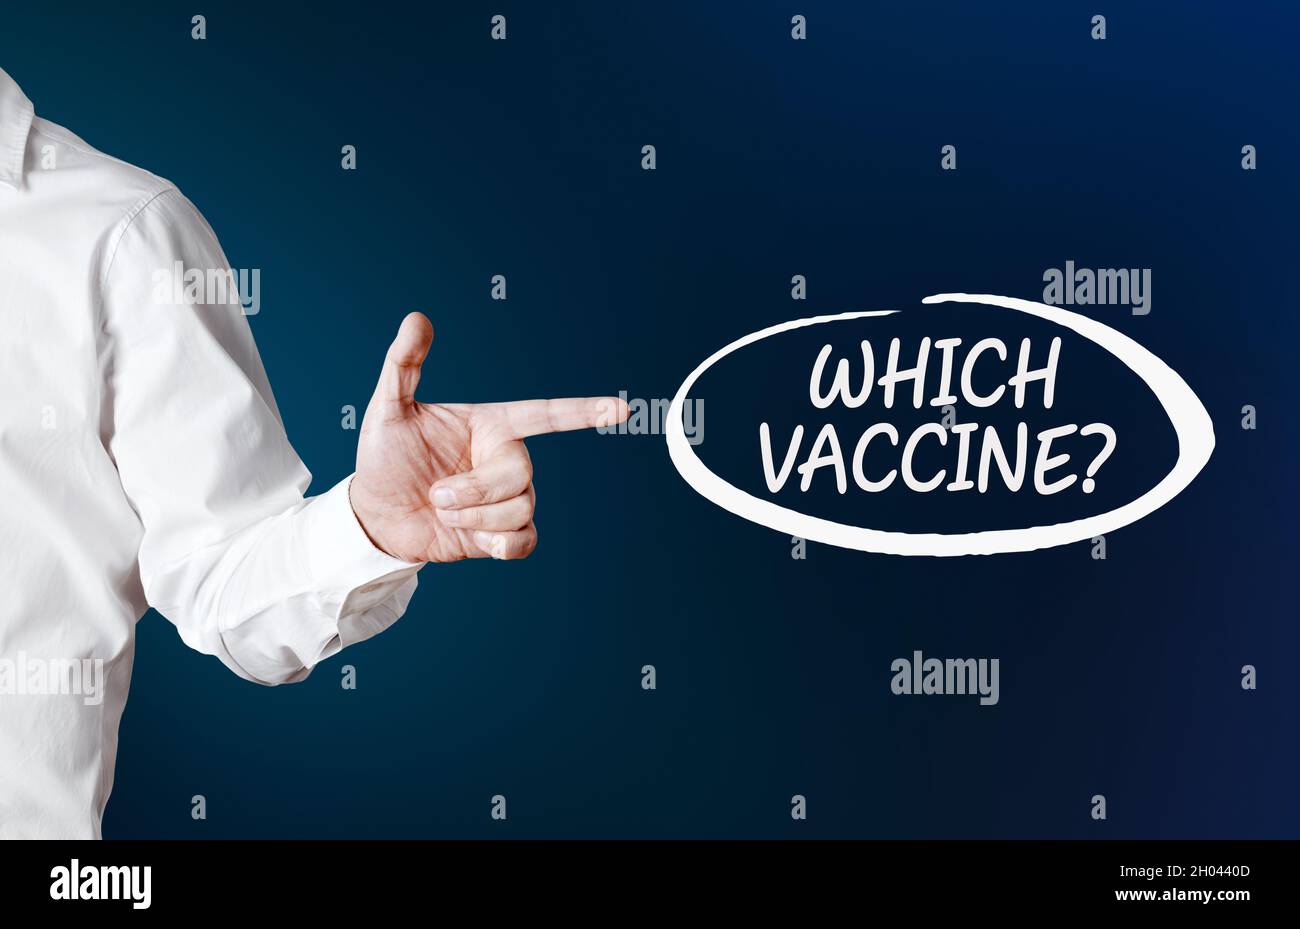 Männliche Hand zeigt auf die Frage, welcher Impfstoff mit einem Umriß auf blauem Hintergrund vorliegt. Wahl des Coronavirus-Impfstoffalternativen-Konzepts. Stockfoto